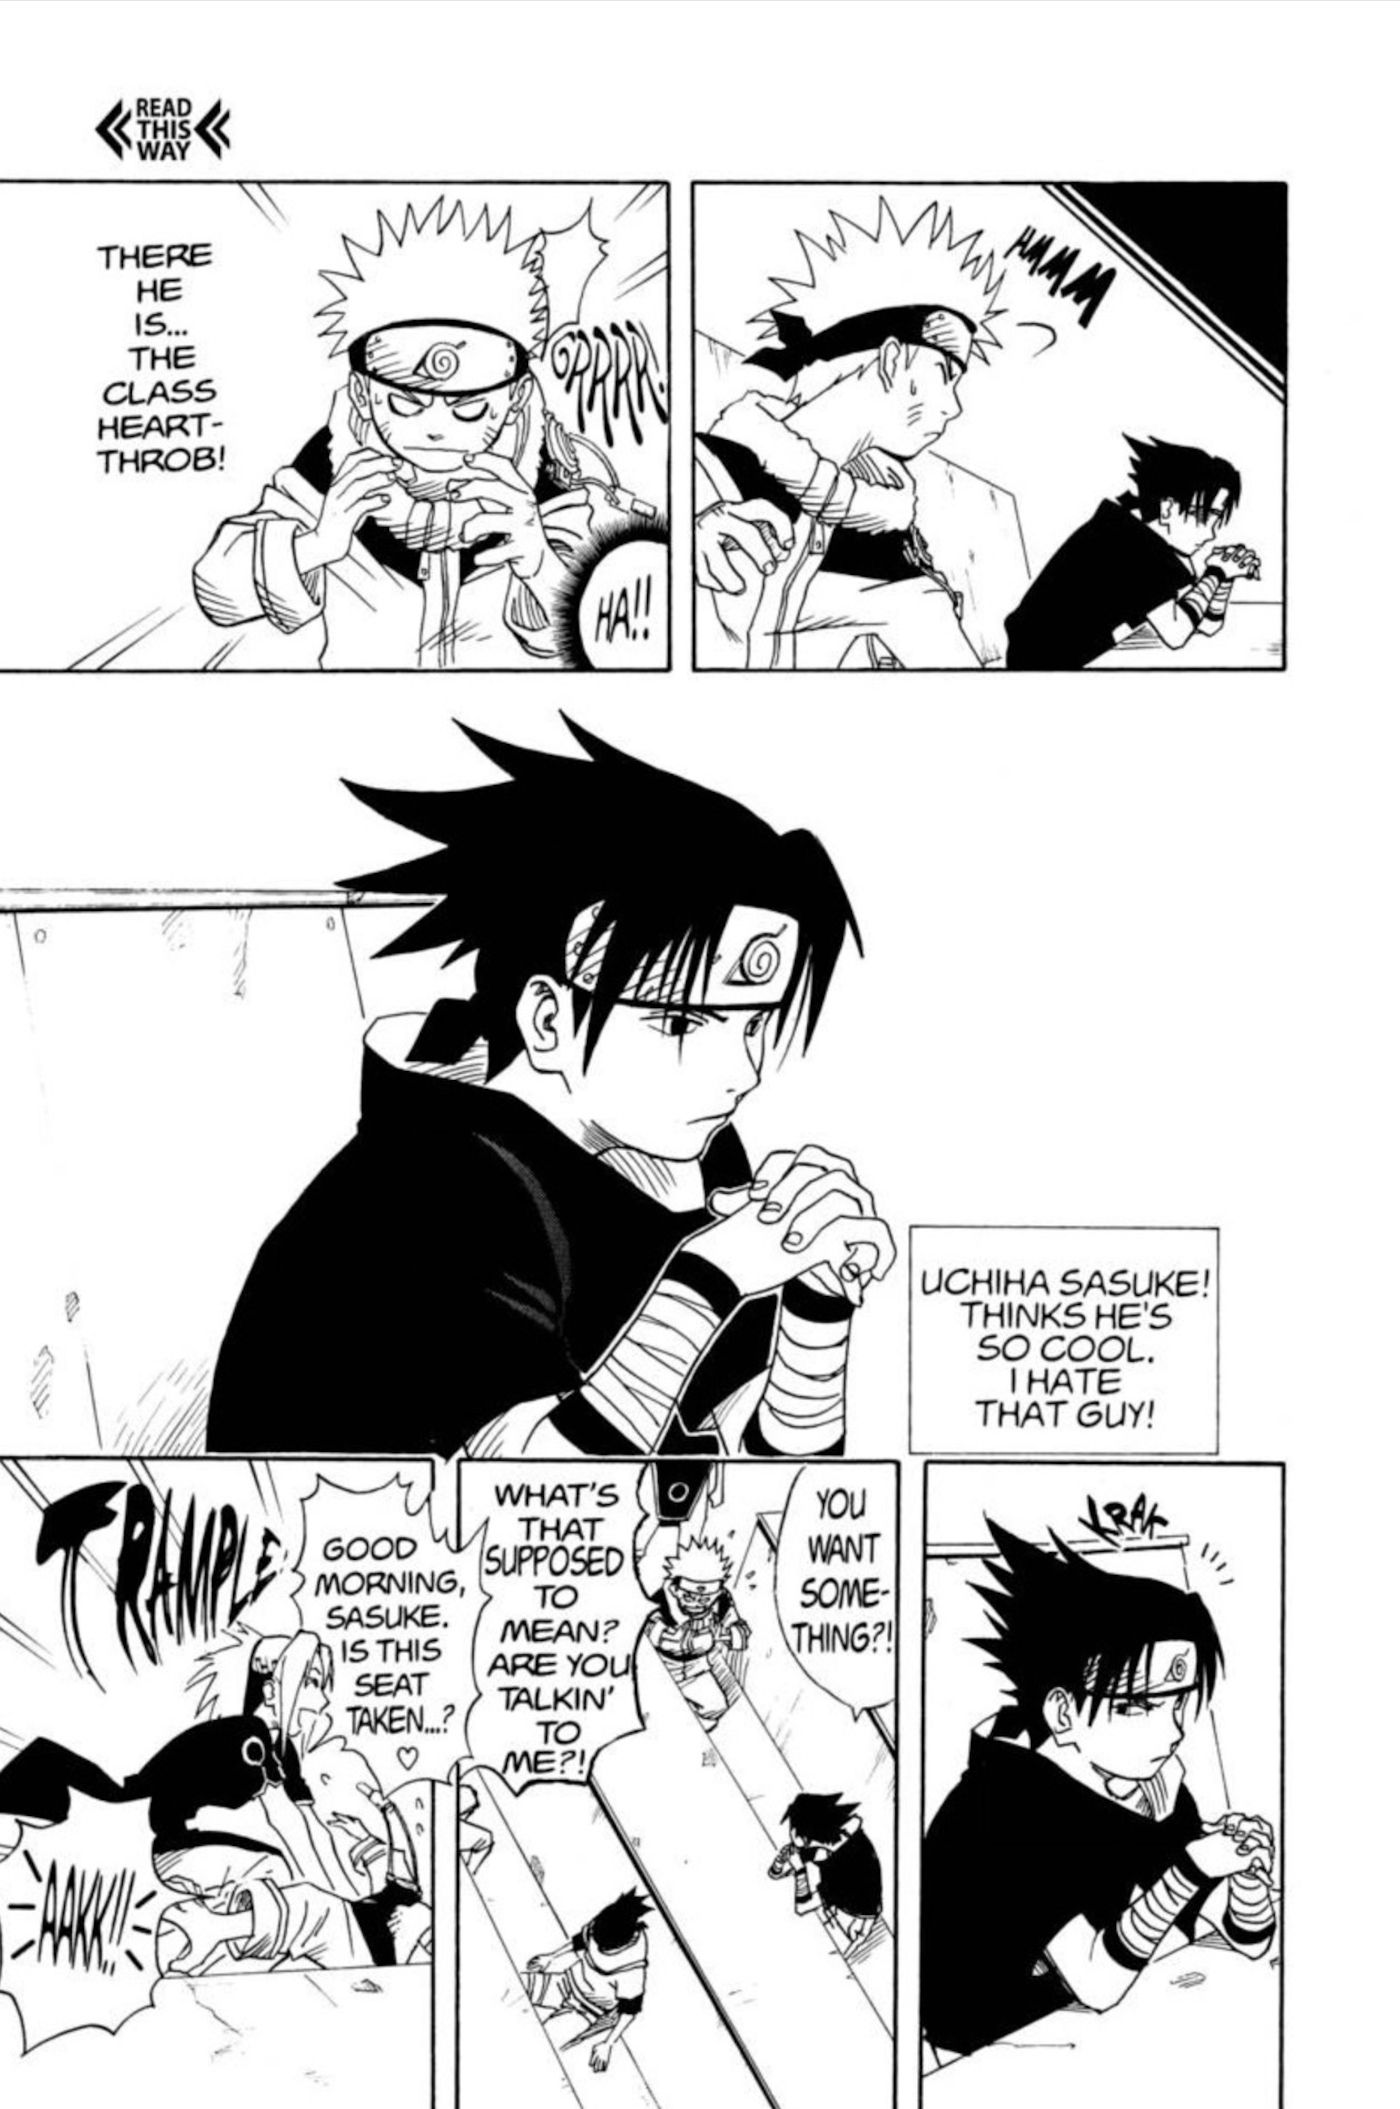 Panel dari manga Naruto chapter 3 menunjukkan Naruto memperkenalkan Sasuke saat mereka berada di dalam kelas.  Keduanya mulai mengganggu satu sama lain dan Sakura melompat ke arah Naruto untuk menghentikannya mengganggu Sasuke.